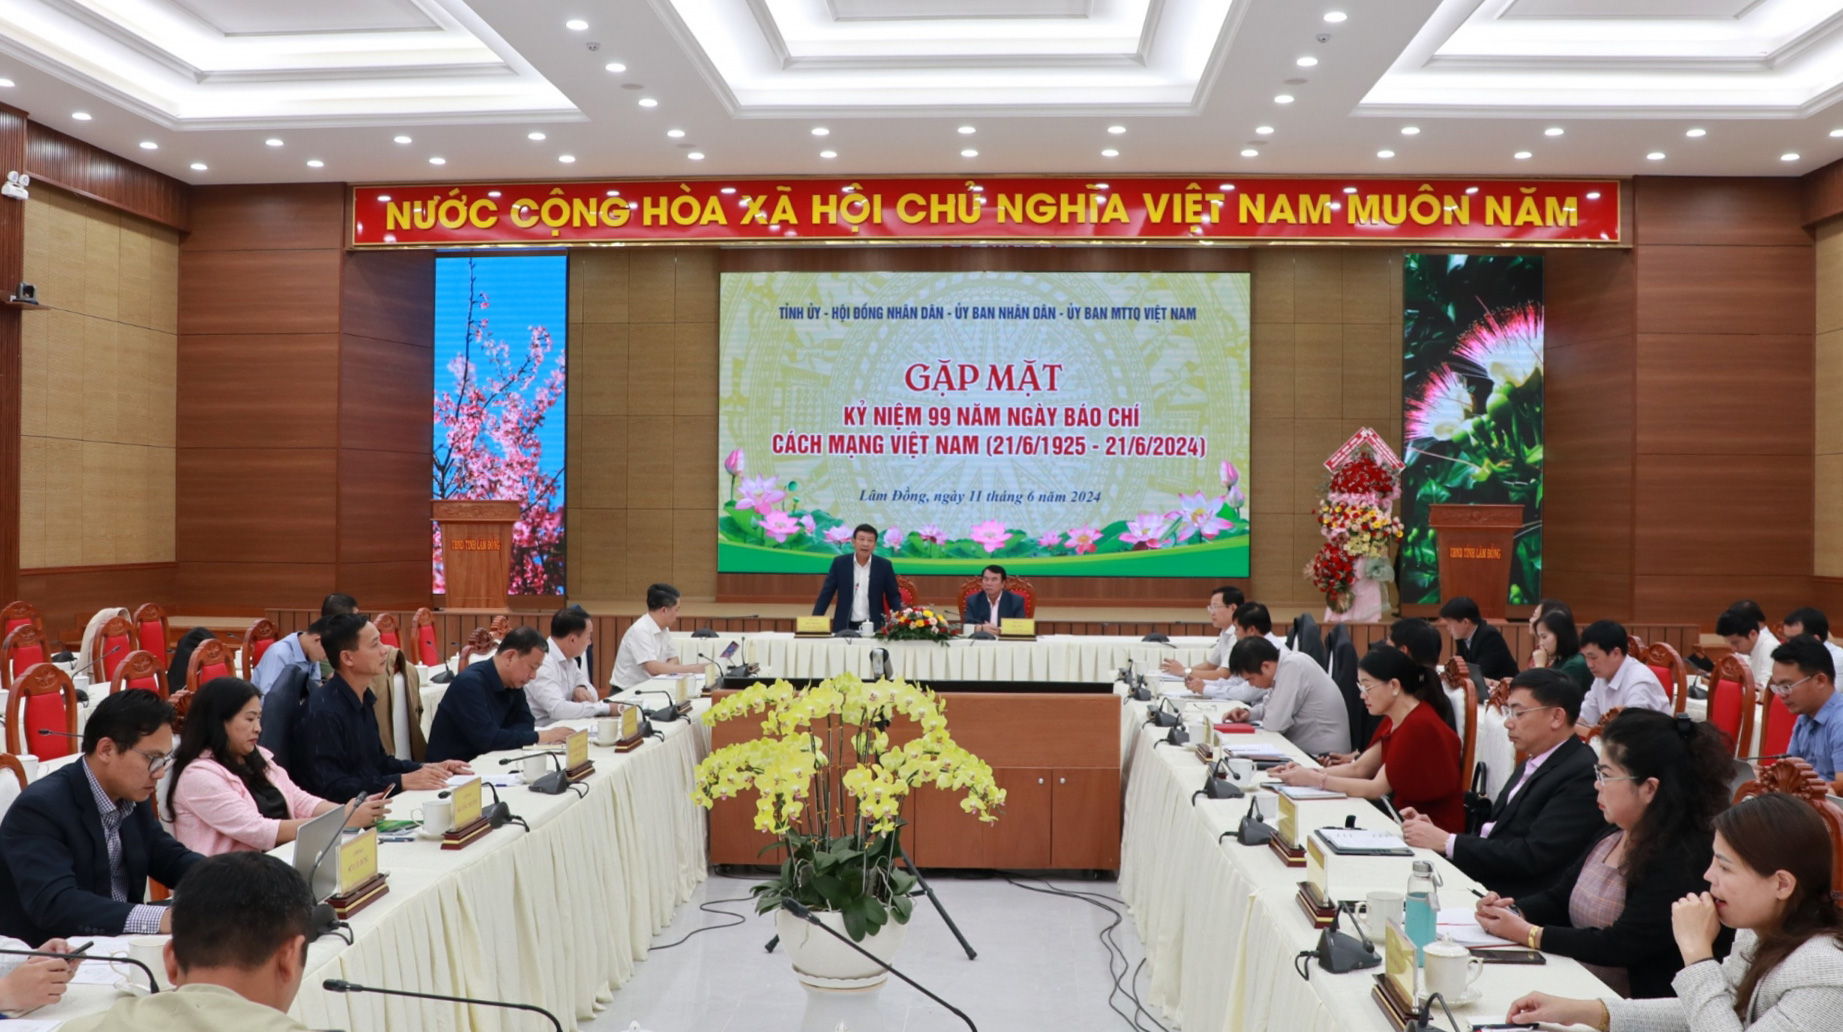 Báo chí tiếp tục đồng hành cùng sự phát triển của tỉnh Lâm Đồng